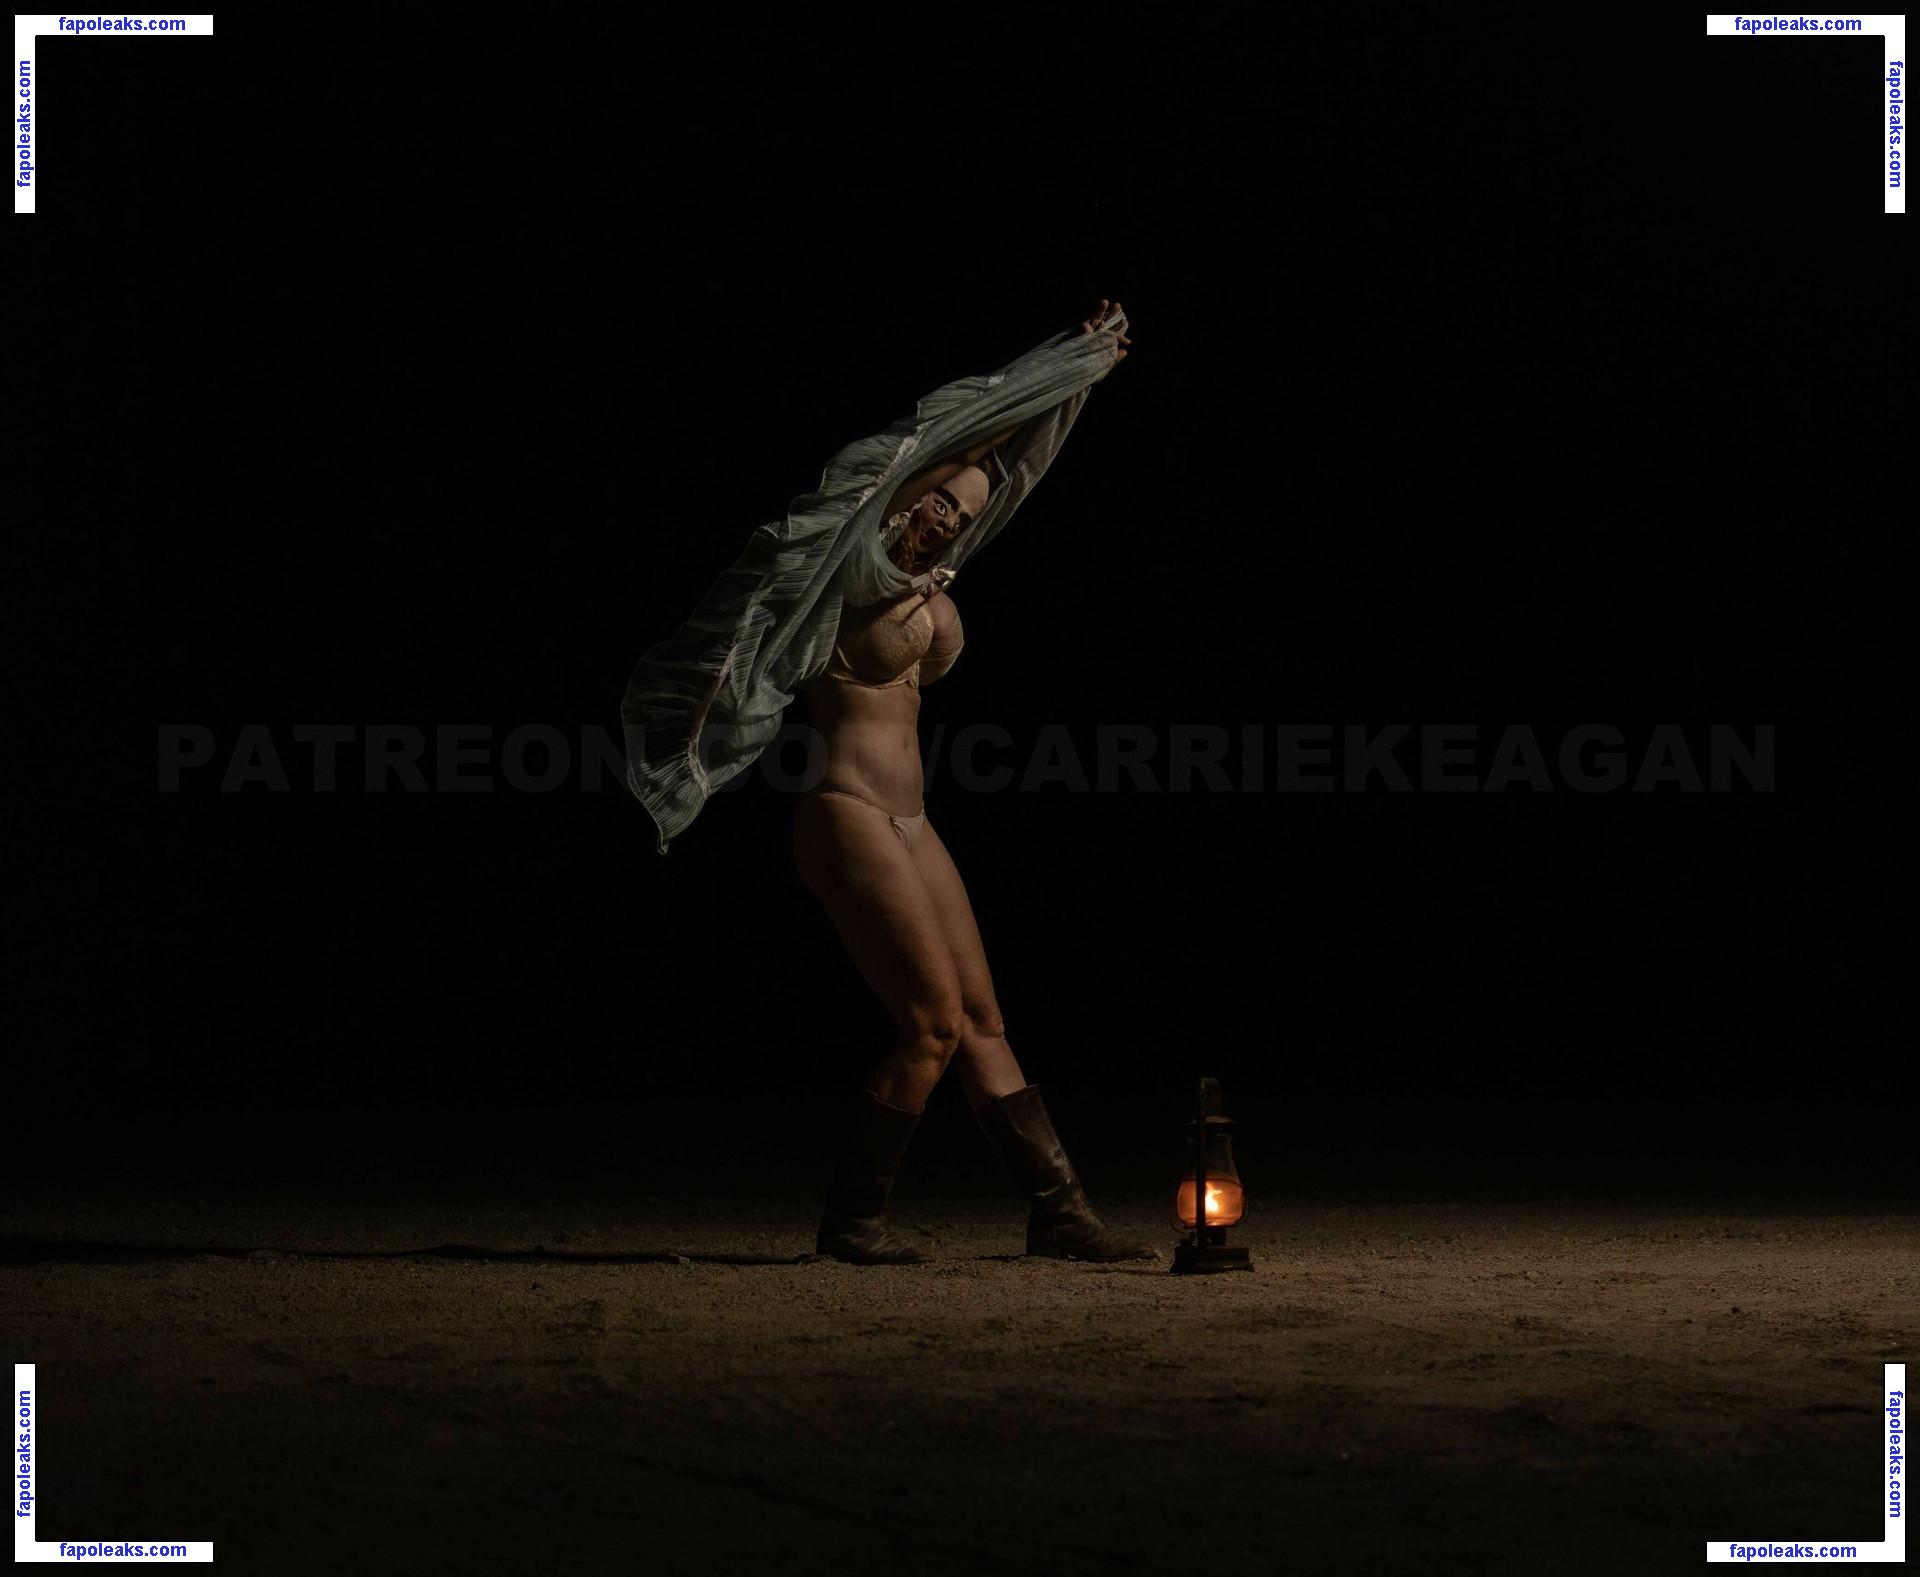 Carrie Keagen / carriekeagan nude photo #0009 from OnlyFans